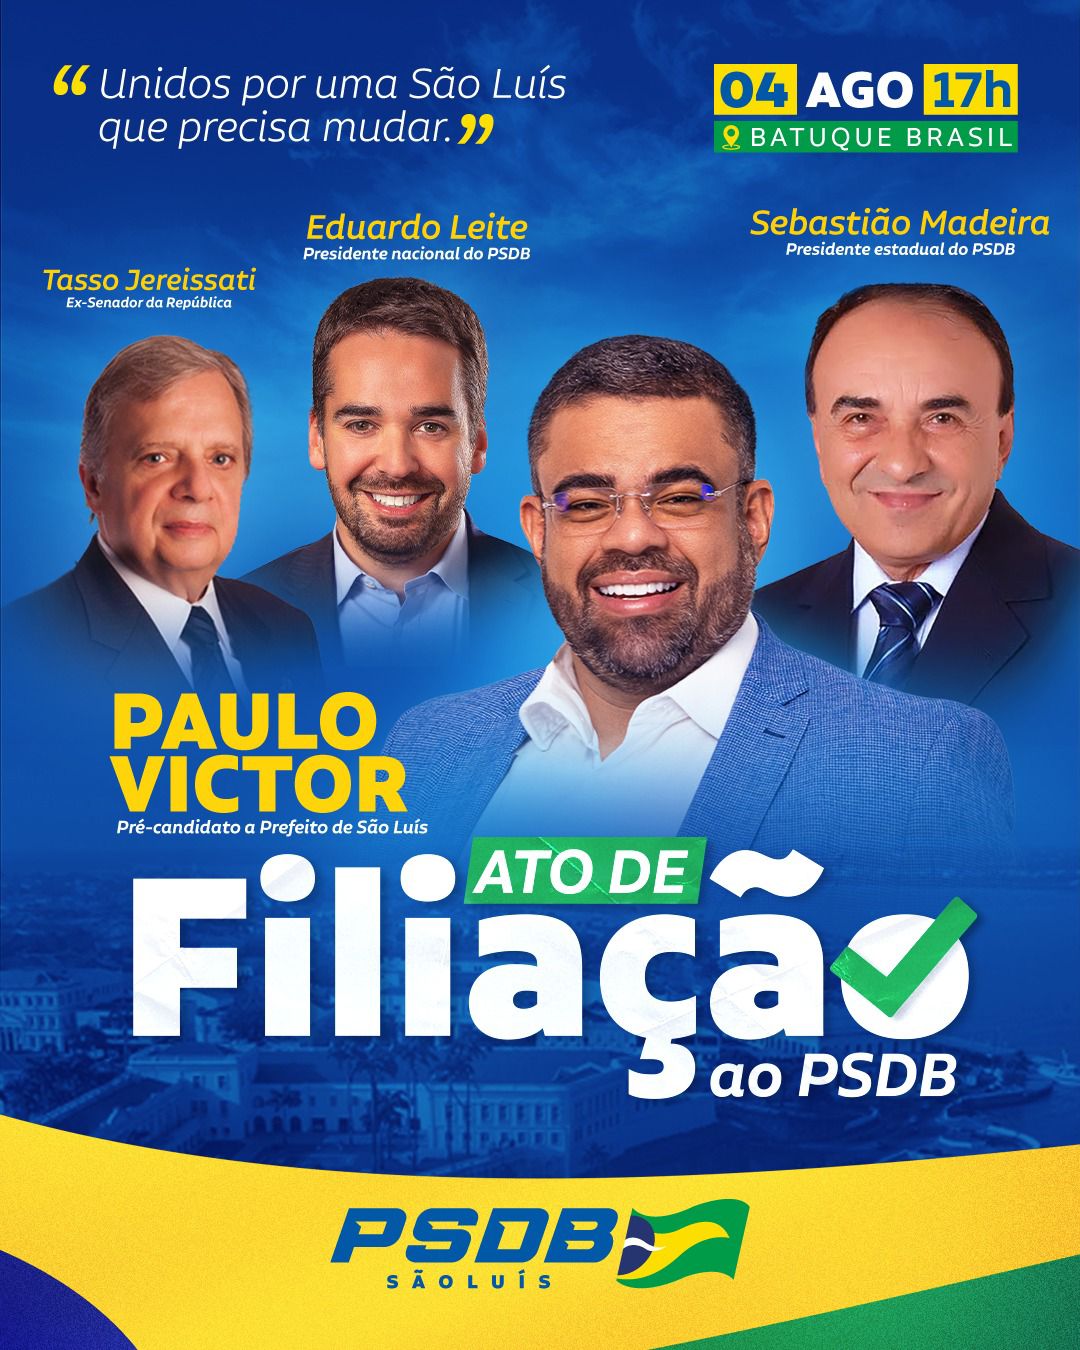 PSDB vai realizar maior evento da legenda com a filiação de Paulo Victor nesta sexta-feira (4)